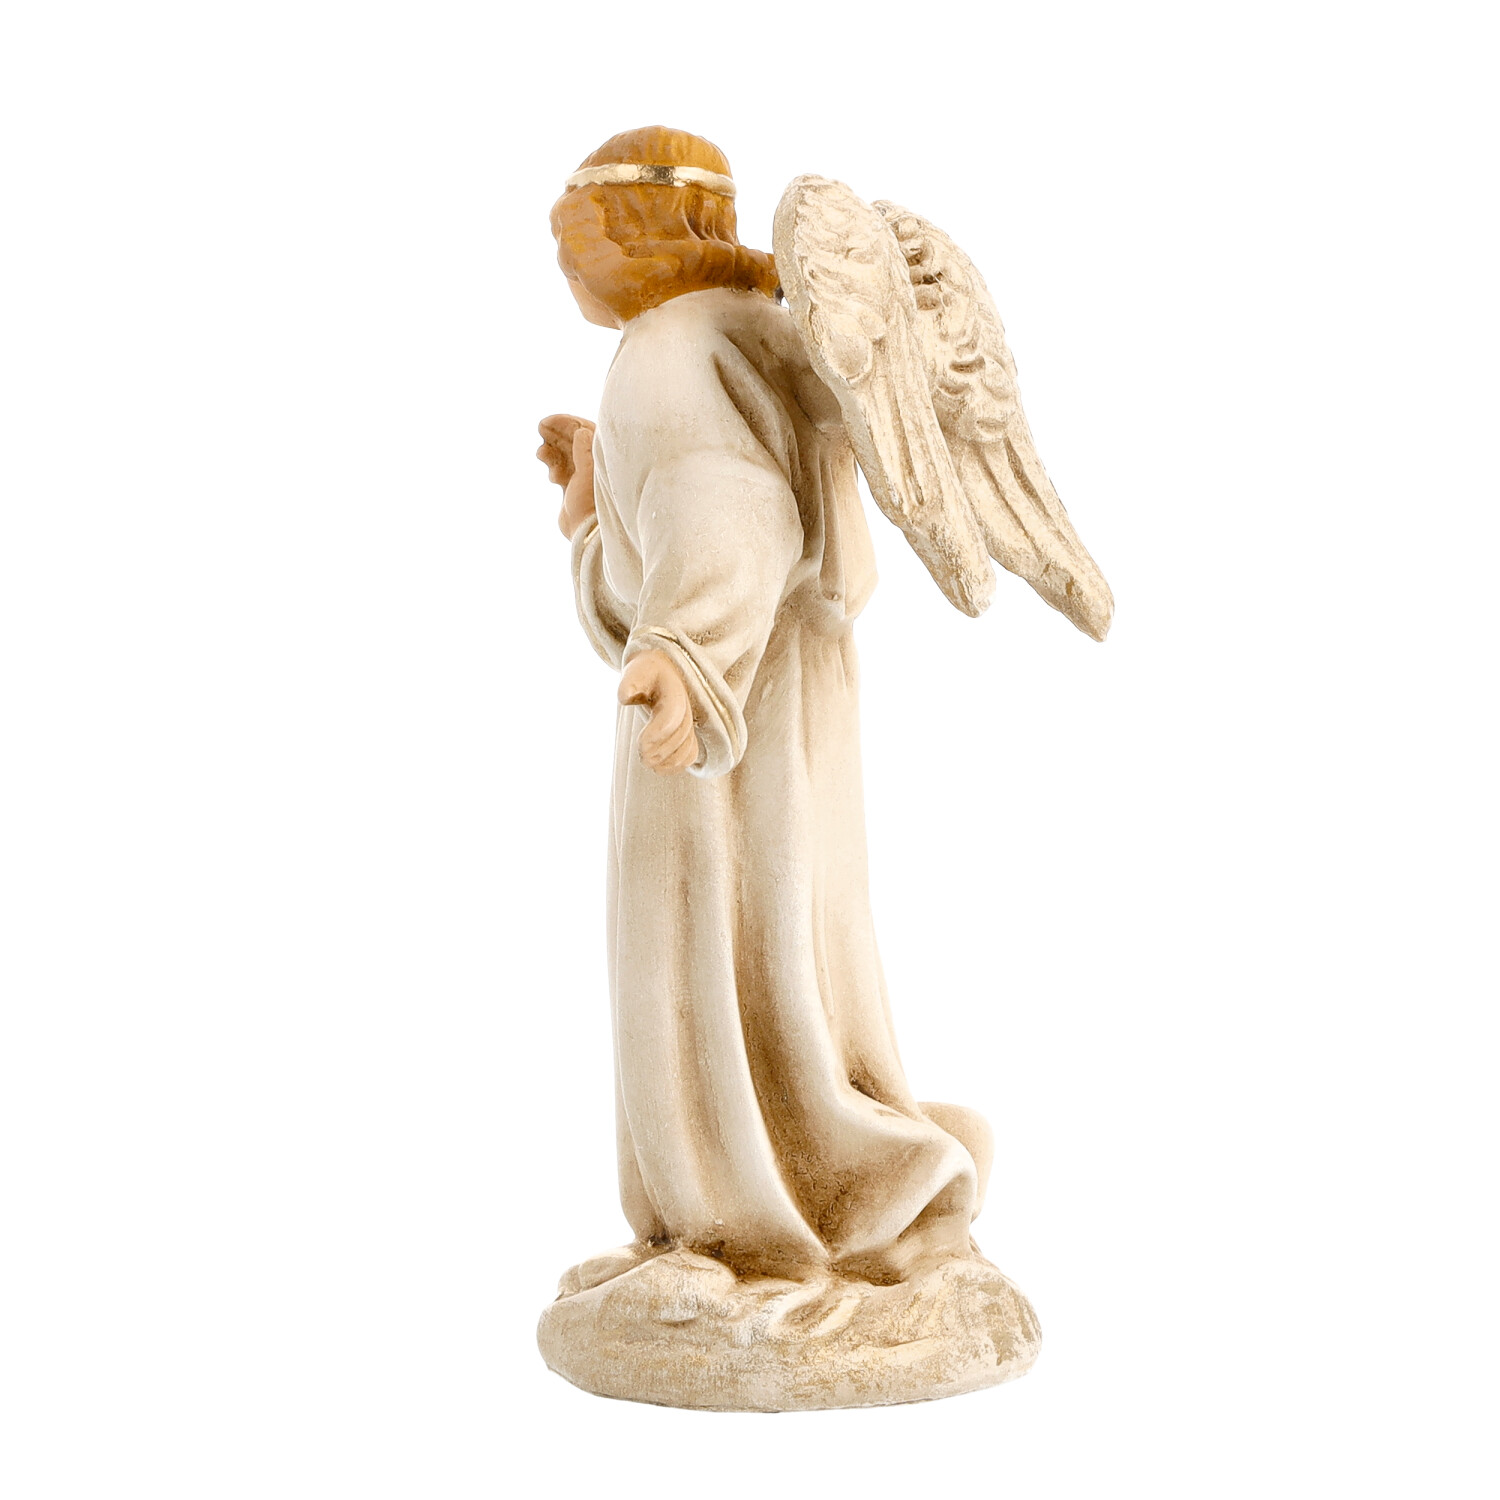 Verkündigungsengel in Antikweiß, zu 10cm Krippenfiguren - Original MAROLIN® - Engel für Ihre Weihnachtskrippe - Made in Germany